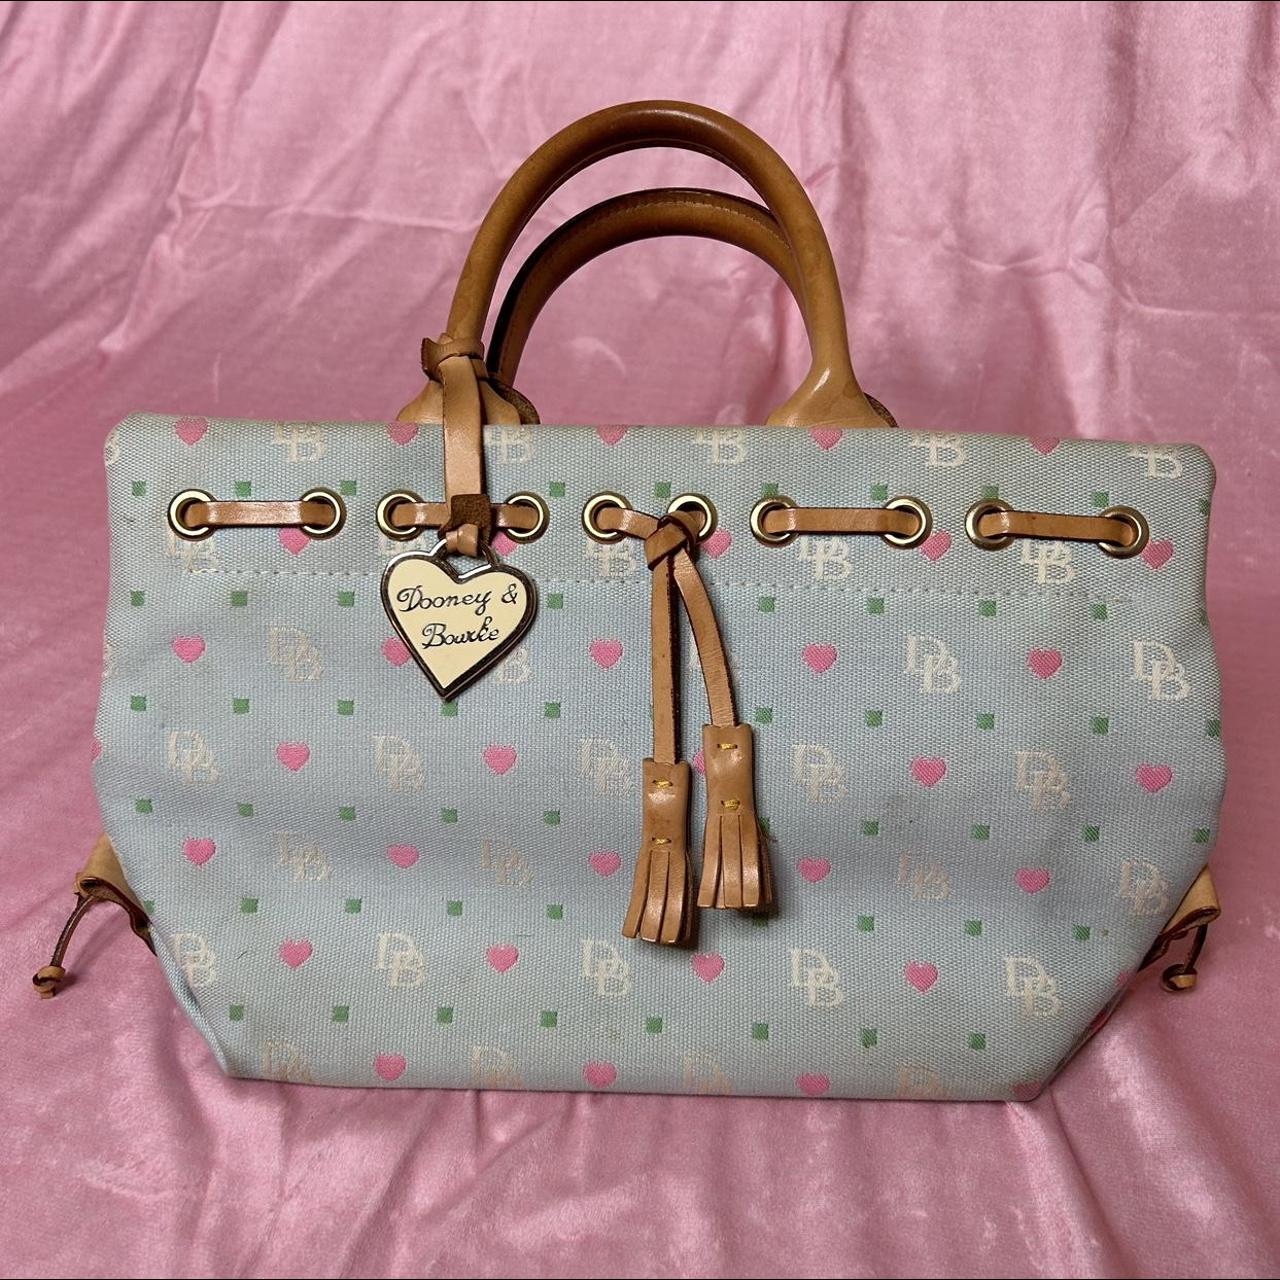 Dooney & Bourke, Bags, Pretty N Pink Dooney Bourke Handbag